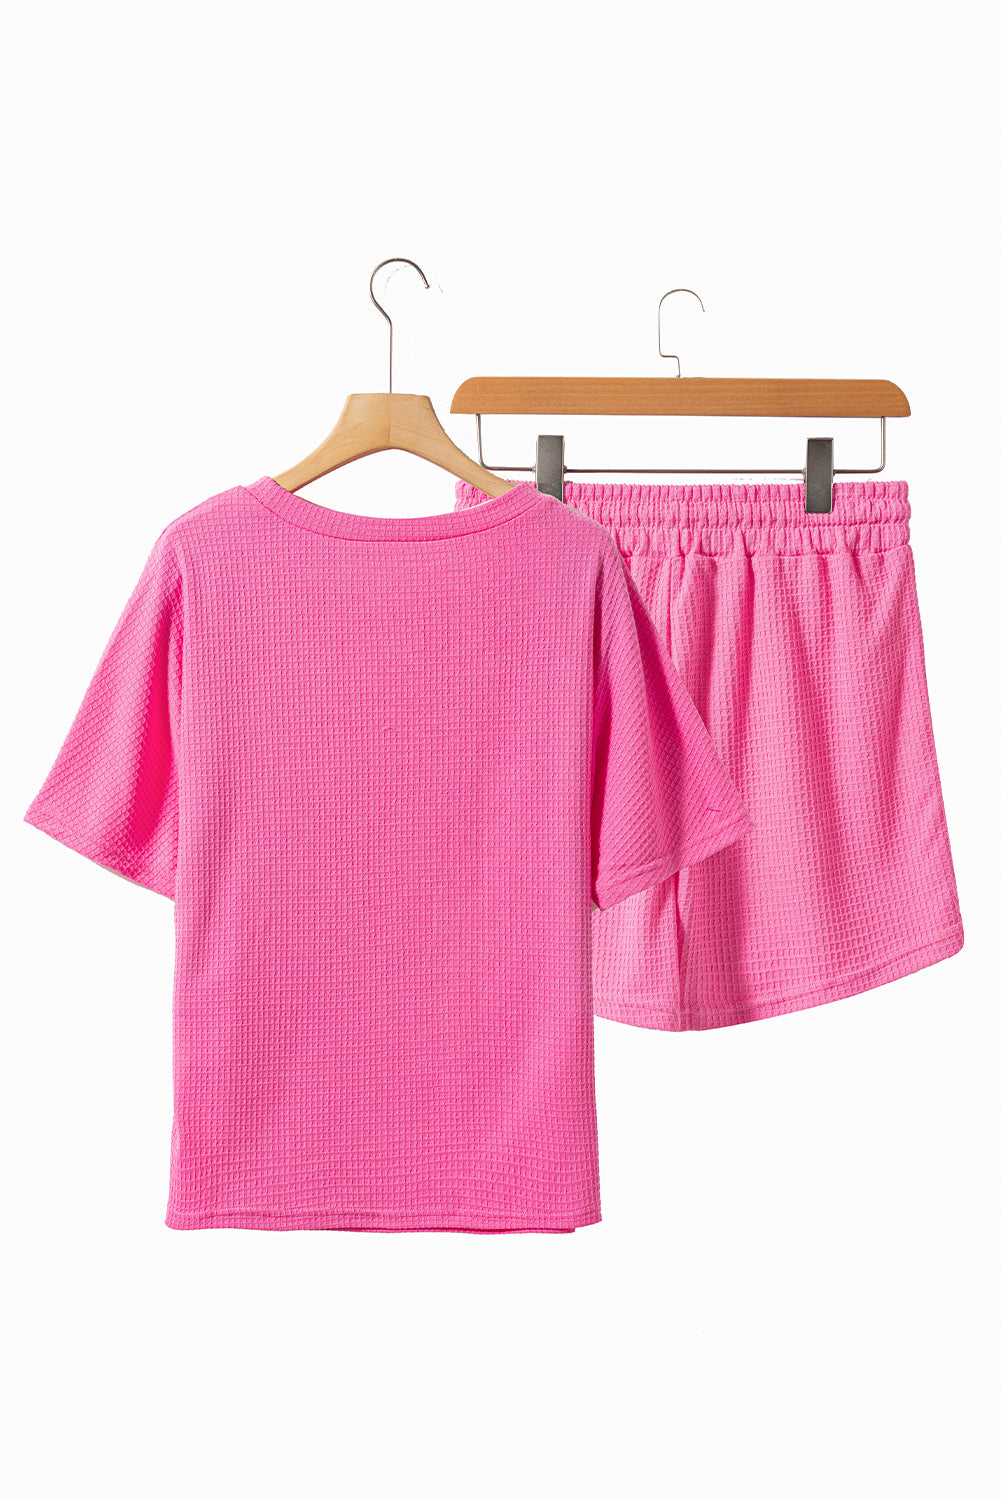 Rožnato rdeč komplet majice in kratkih hlač z vrvico za prosti čas